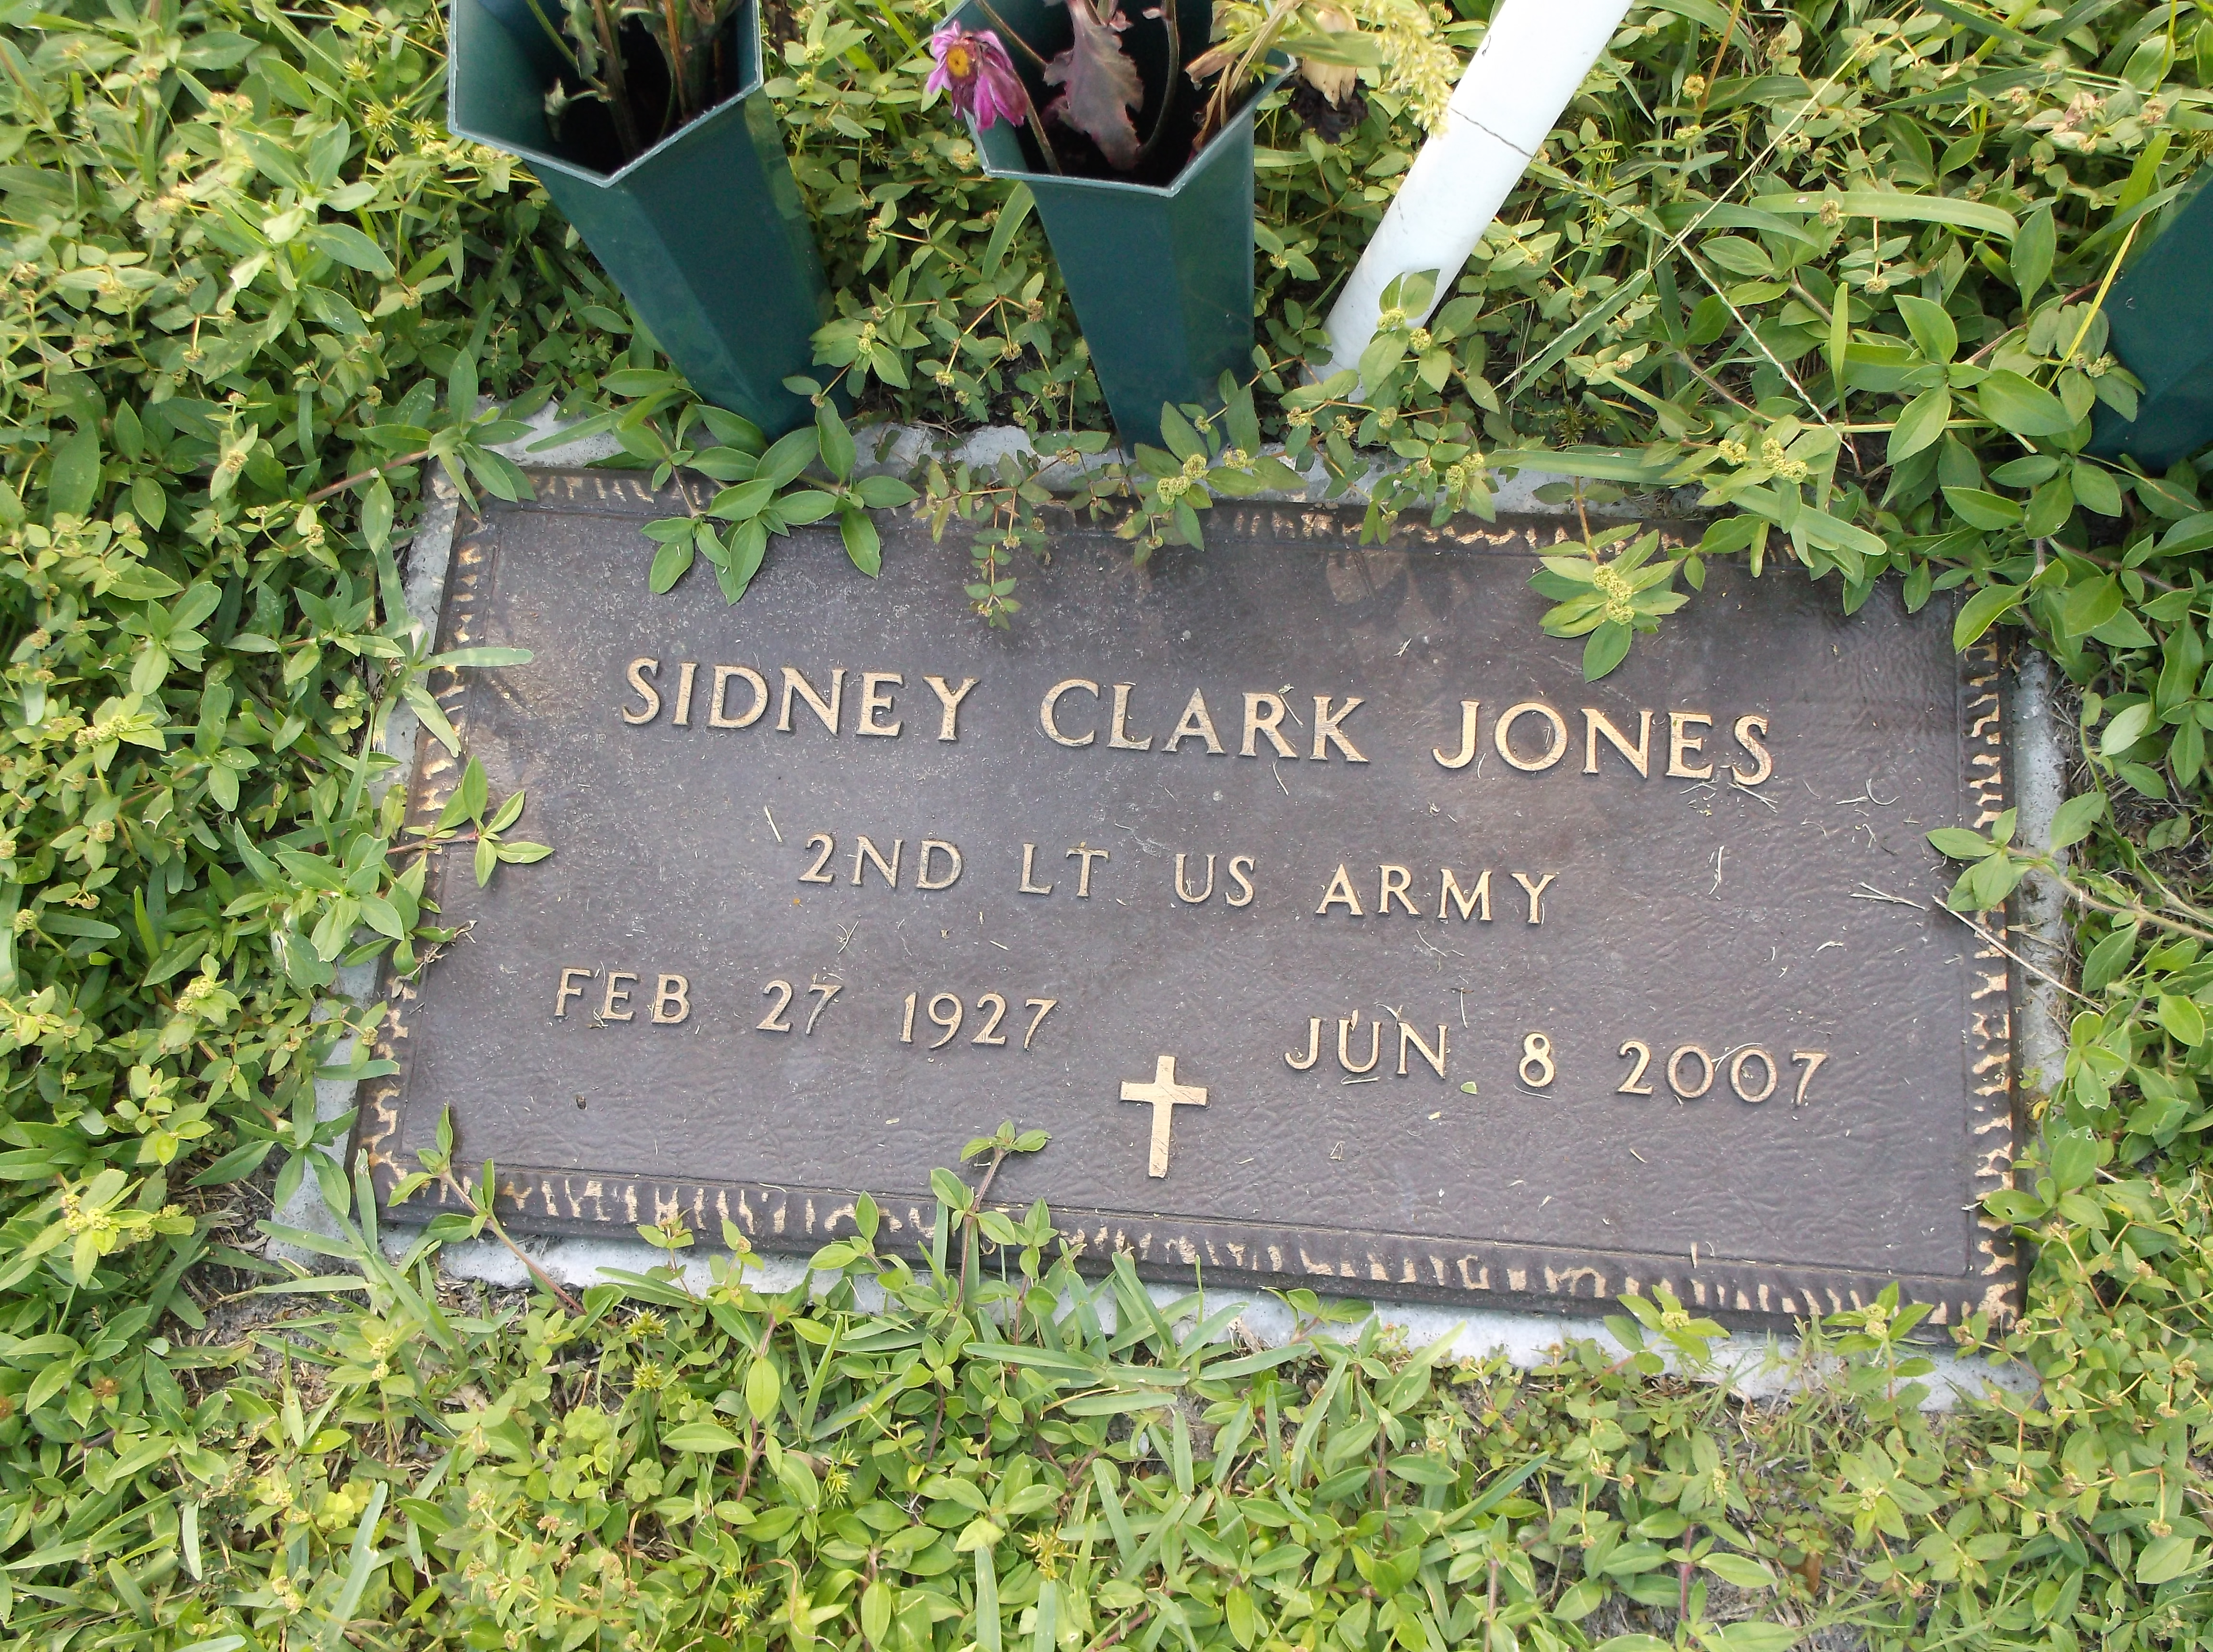 Sidney Clark Jones